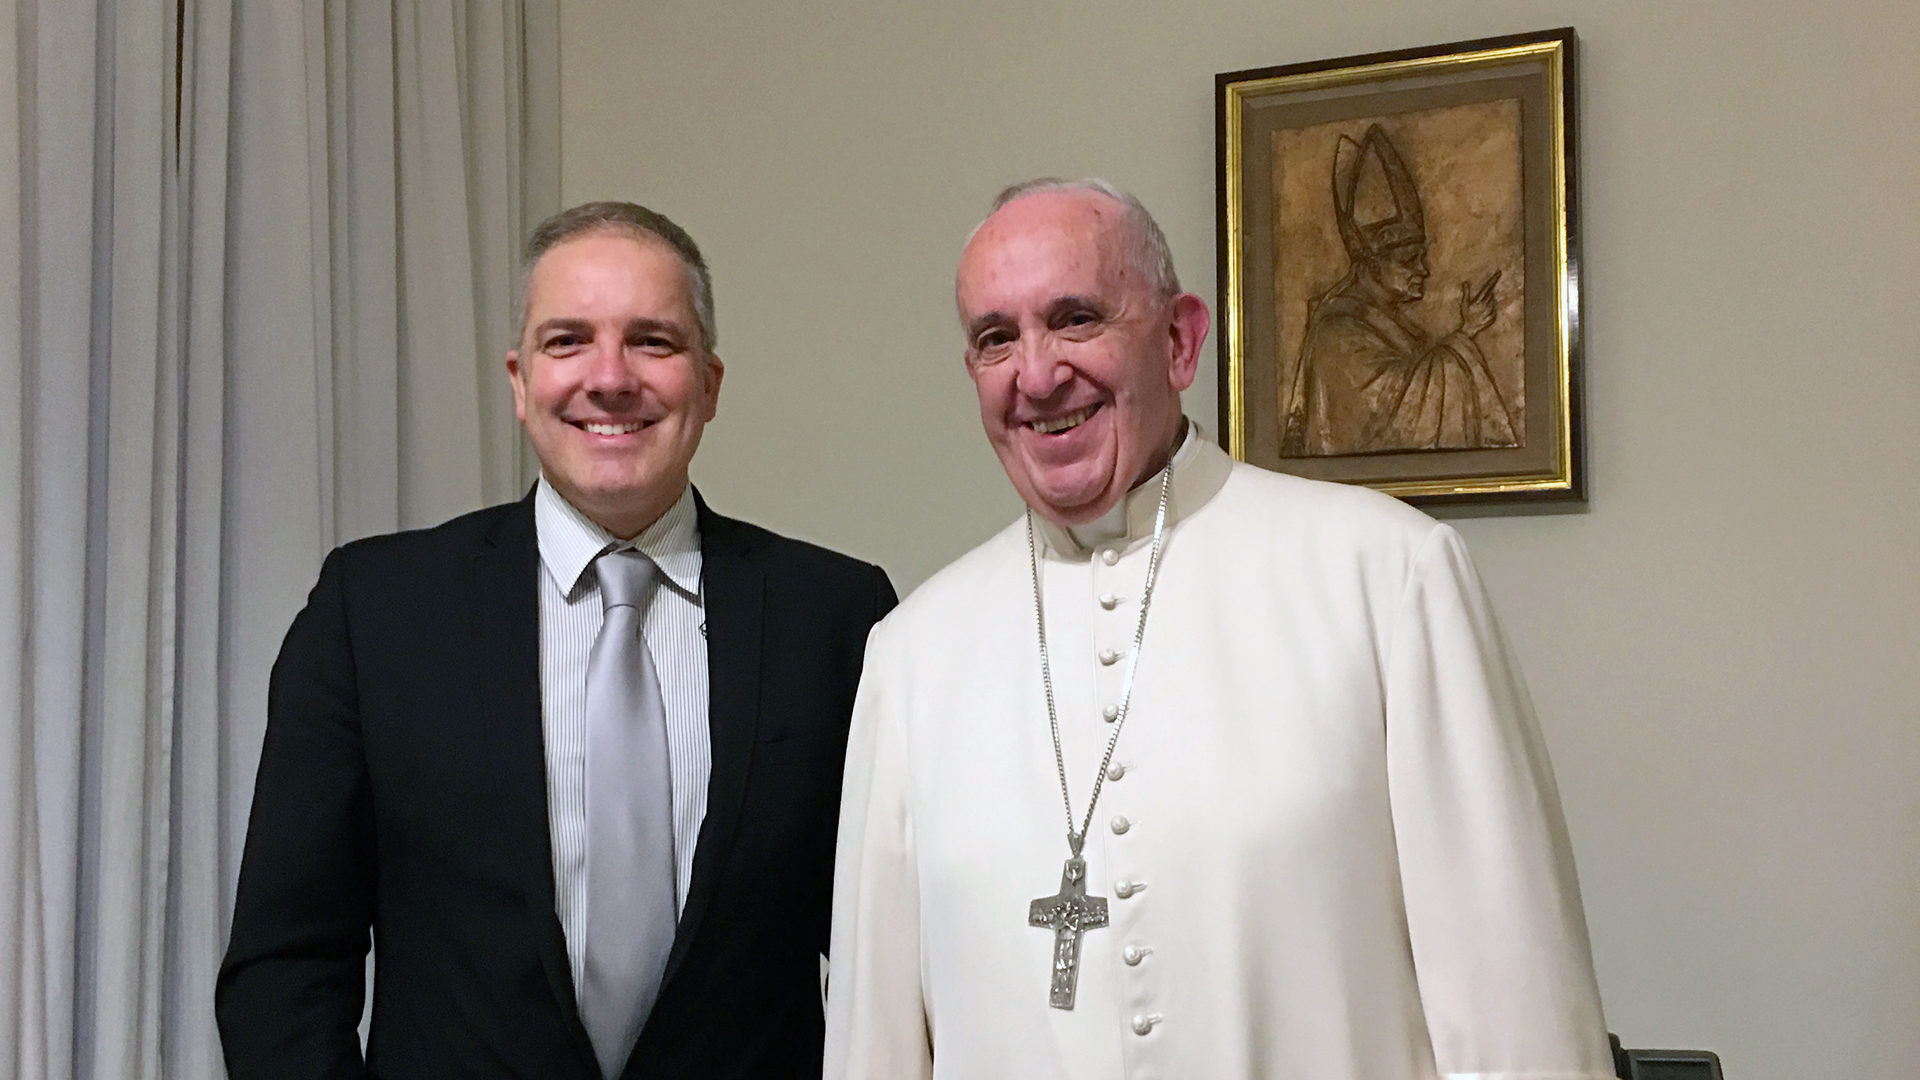 Olivier Fleury avec le pape François à Rome en novembre 2016, pour présenter son projet Jesus Celebration 2033 (Photo: DR)